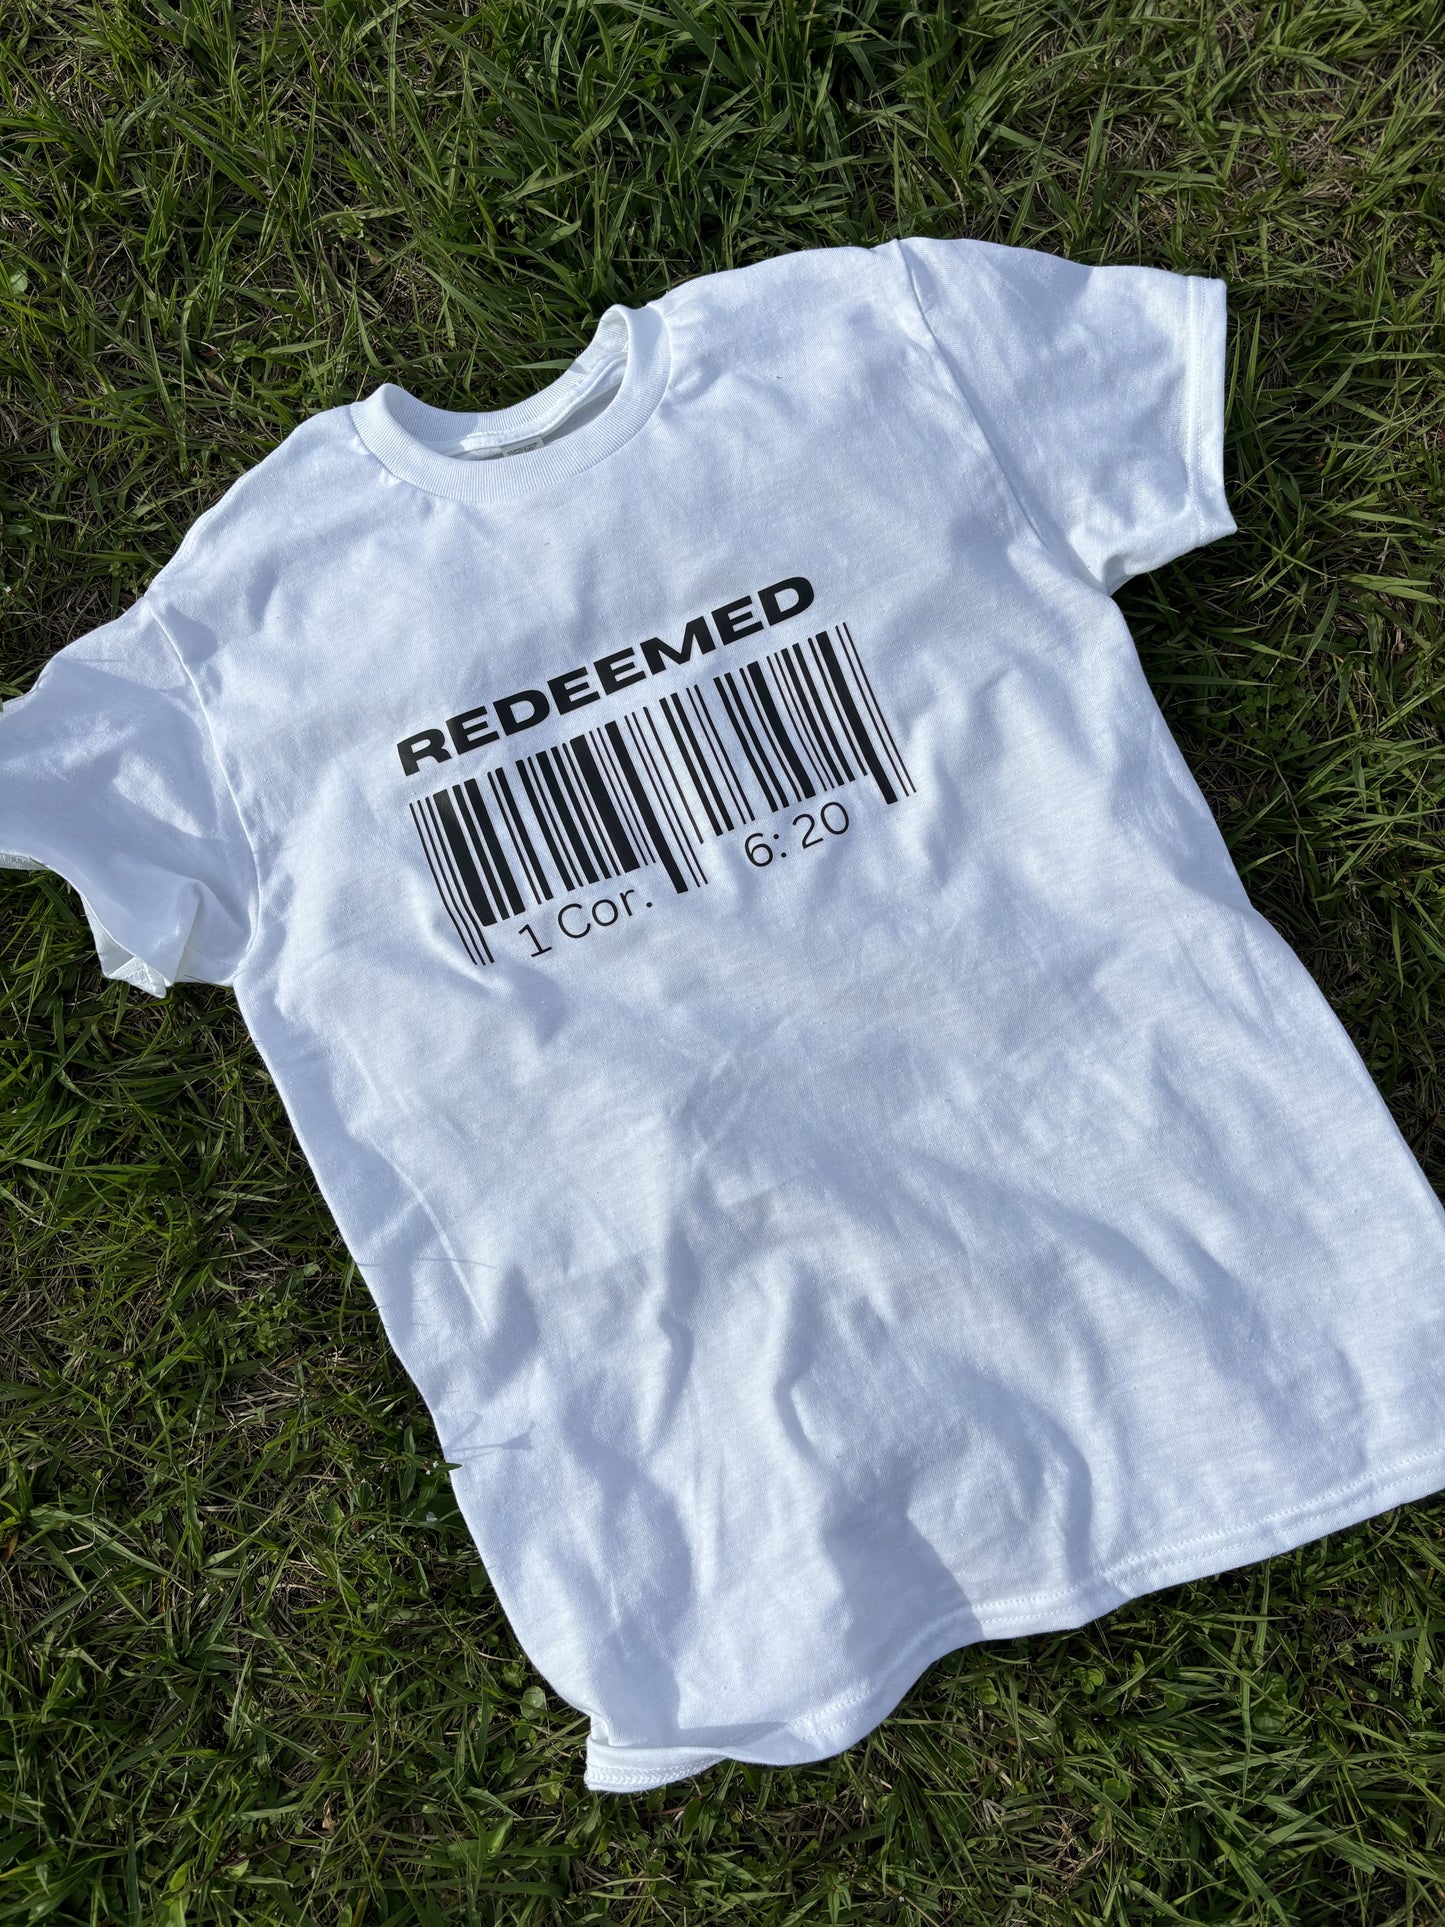 Redeemed - Adults T Shirt